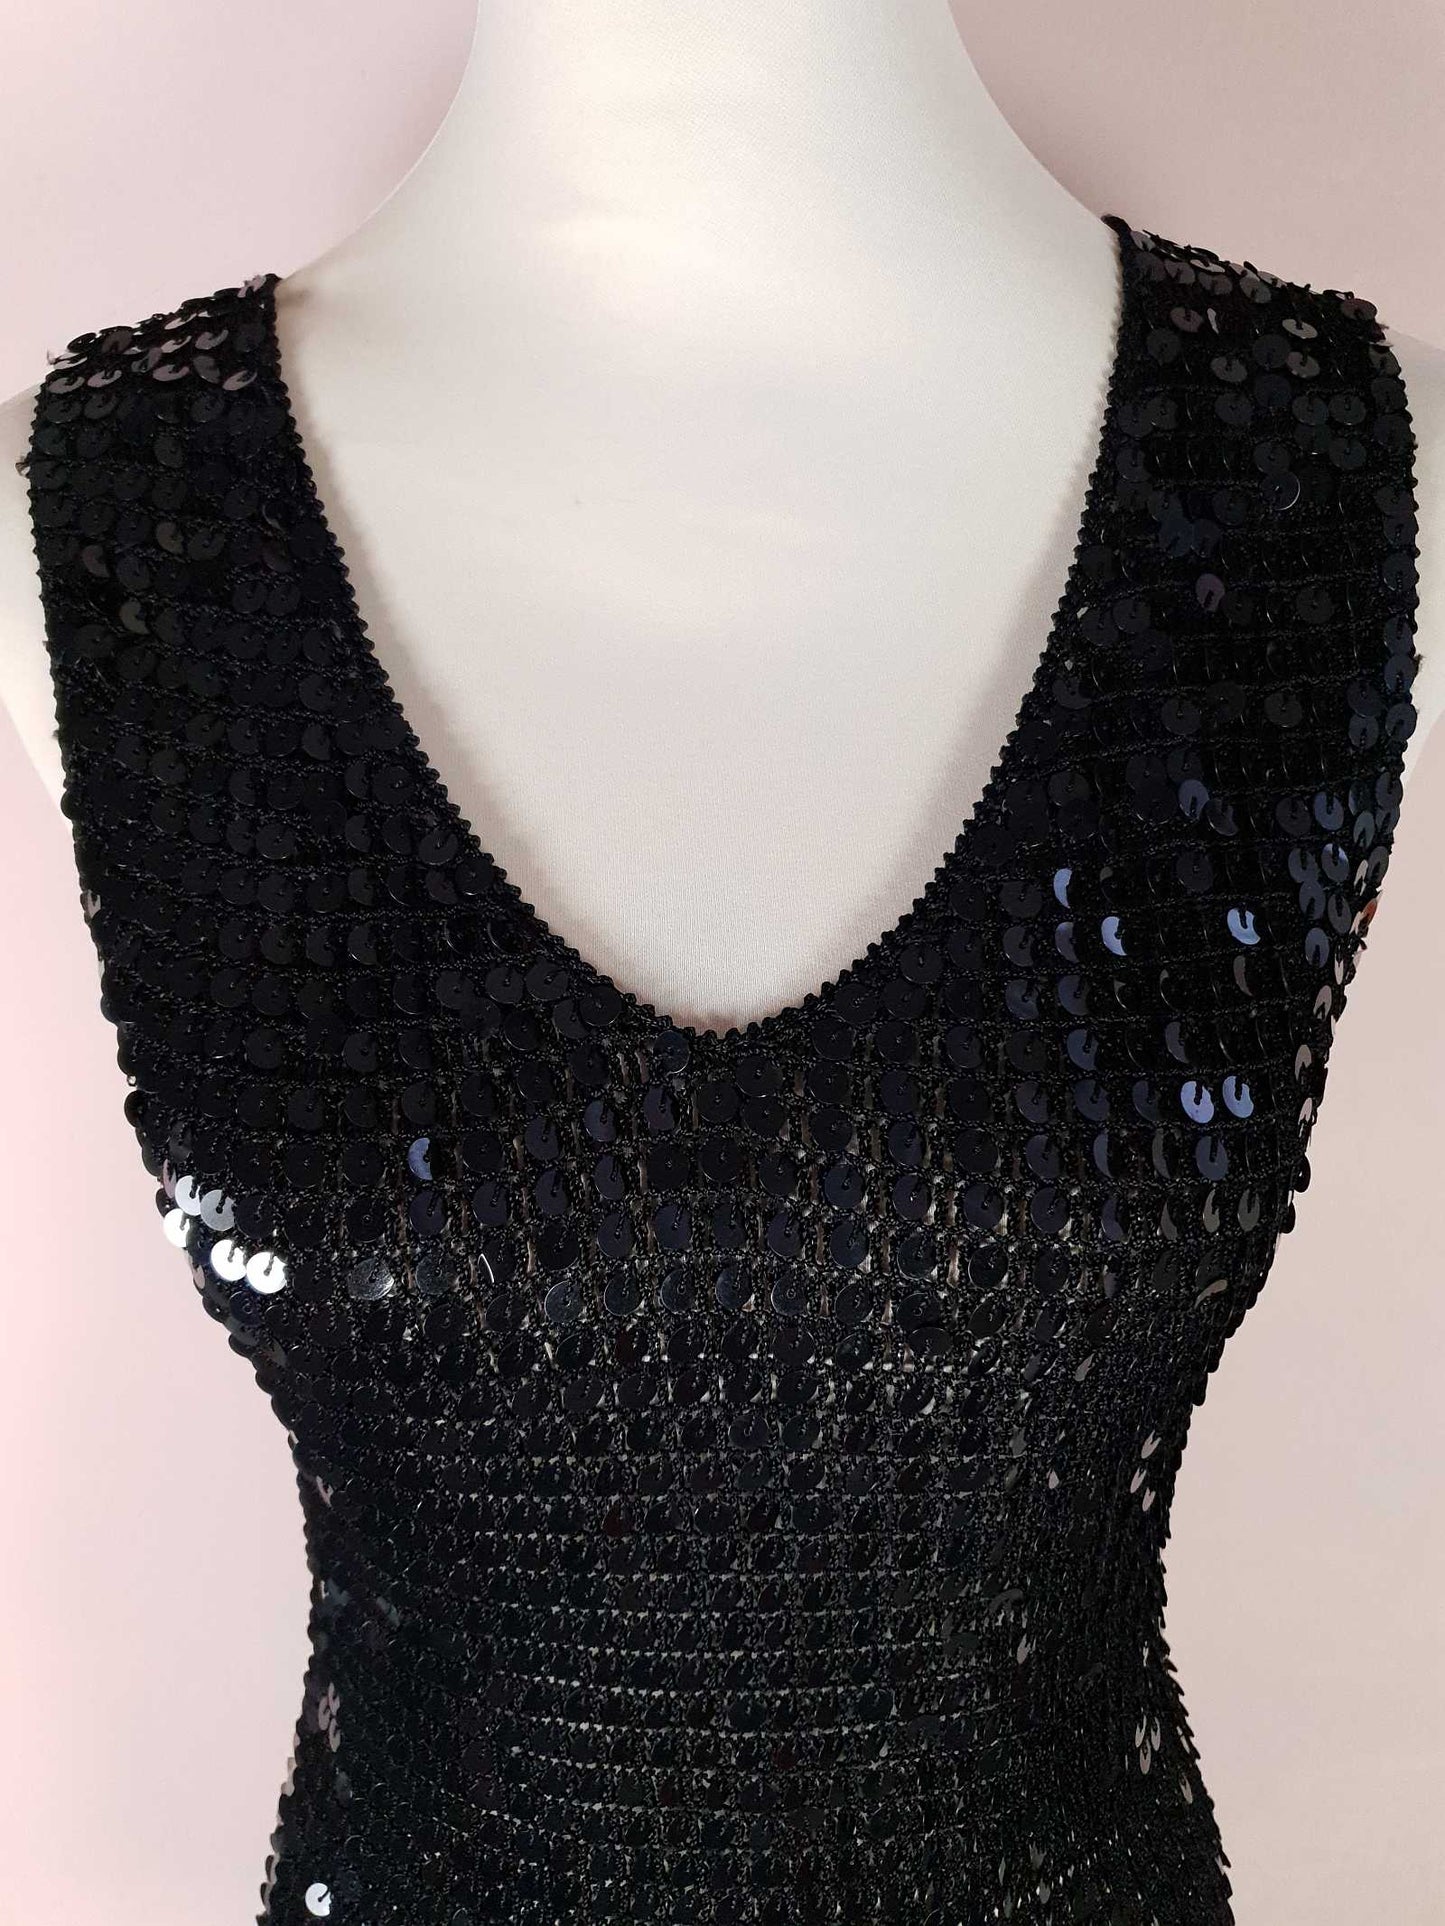 Vintage 90s Black Sequin Crochet Top Size 12 Party